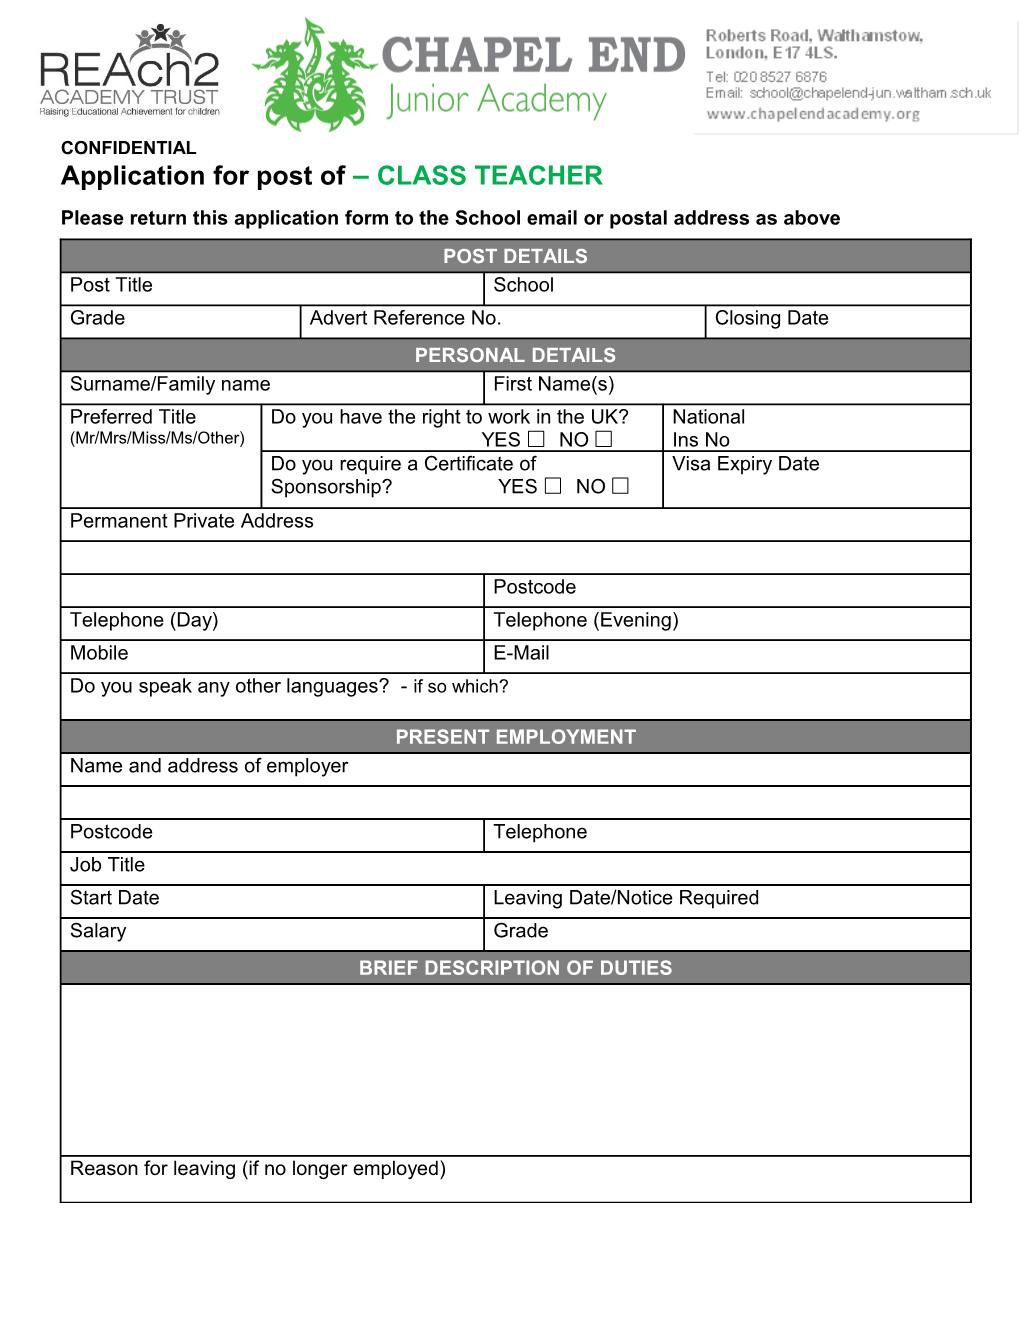 Application for Post of CLASS TEACHER